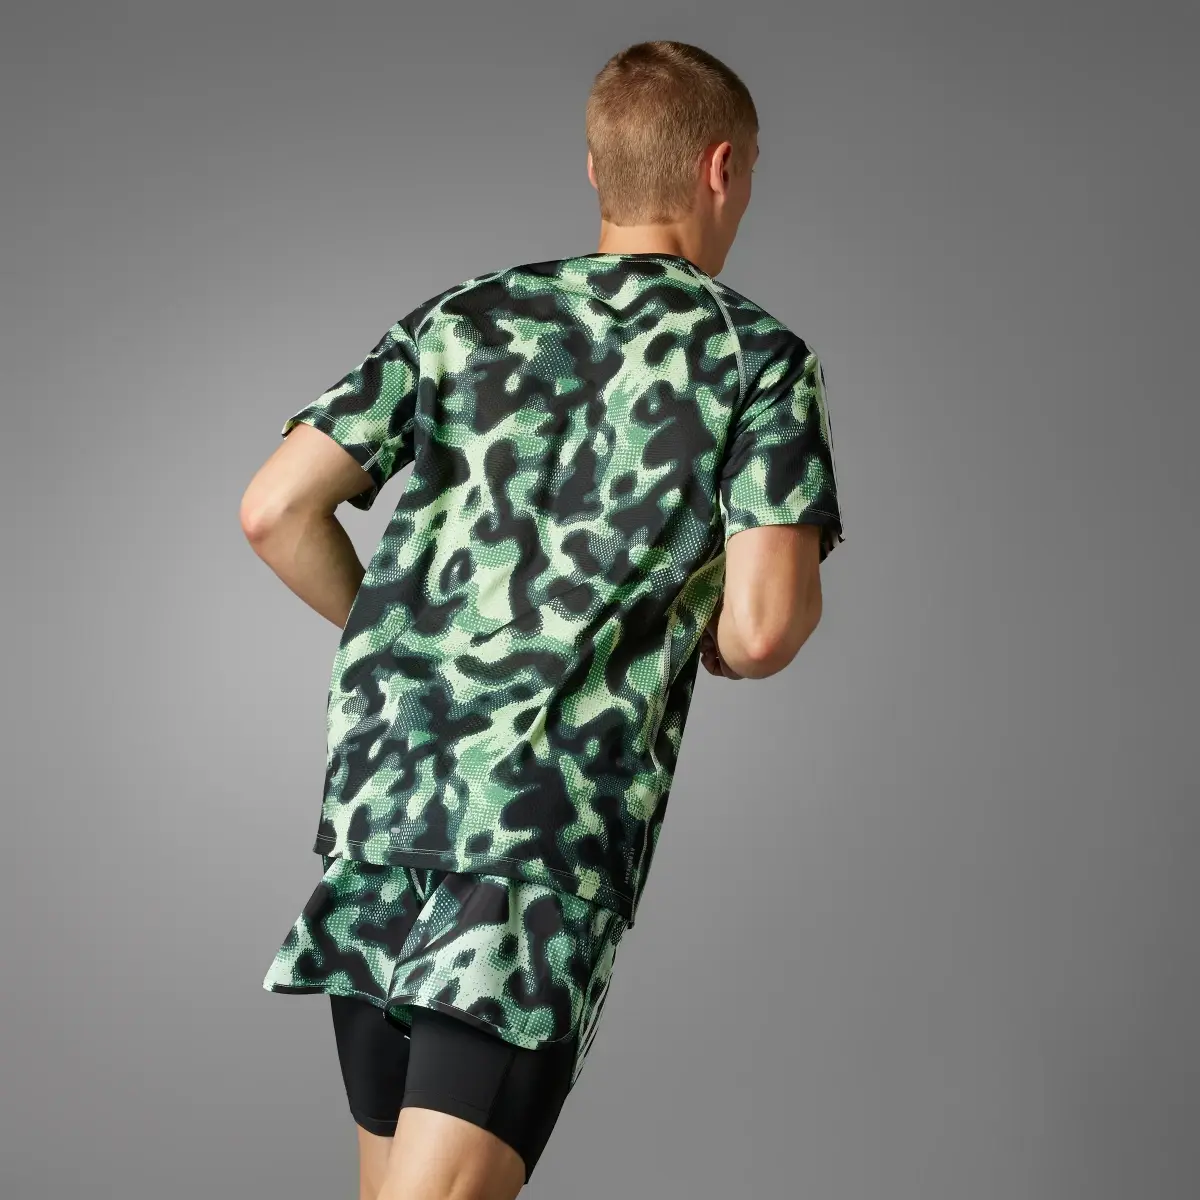 Adidas T-shirt imprimé intégral Own the Run 3 bandes. 1